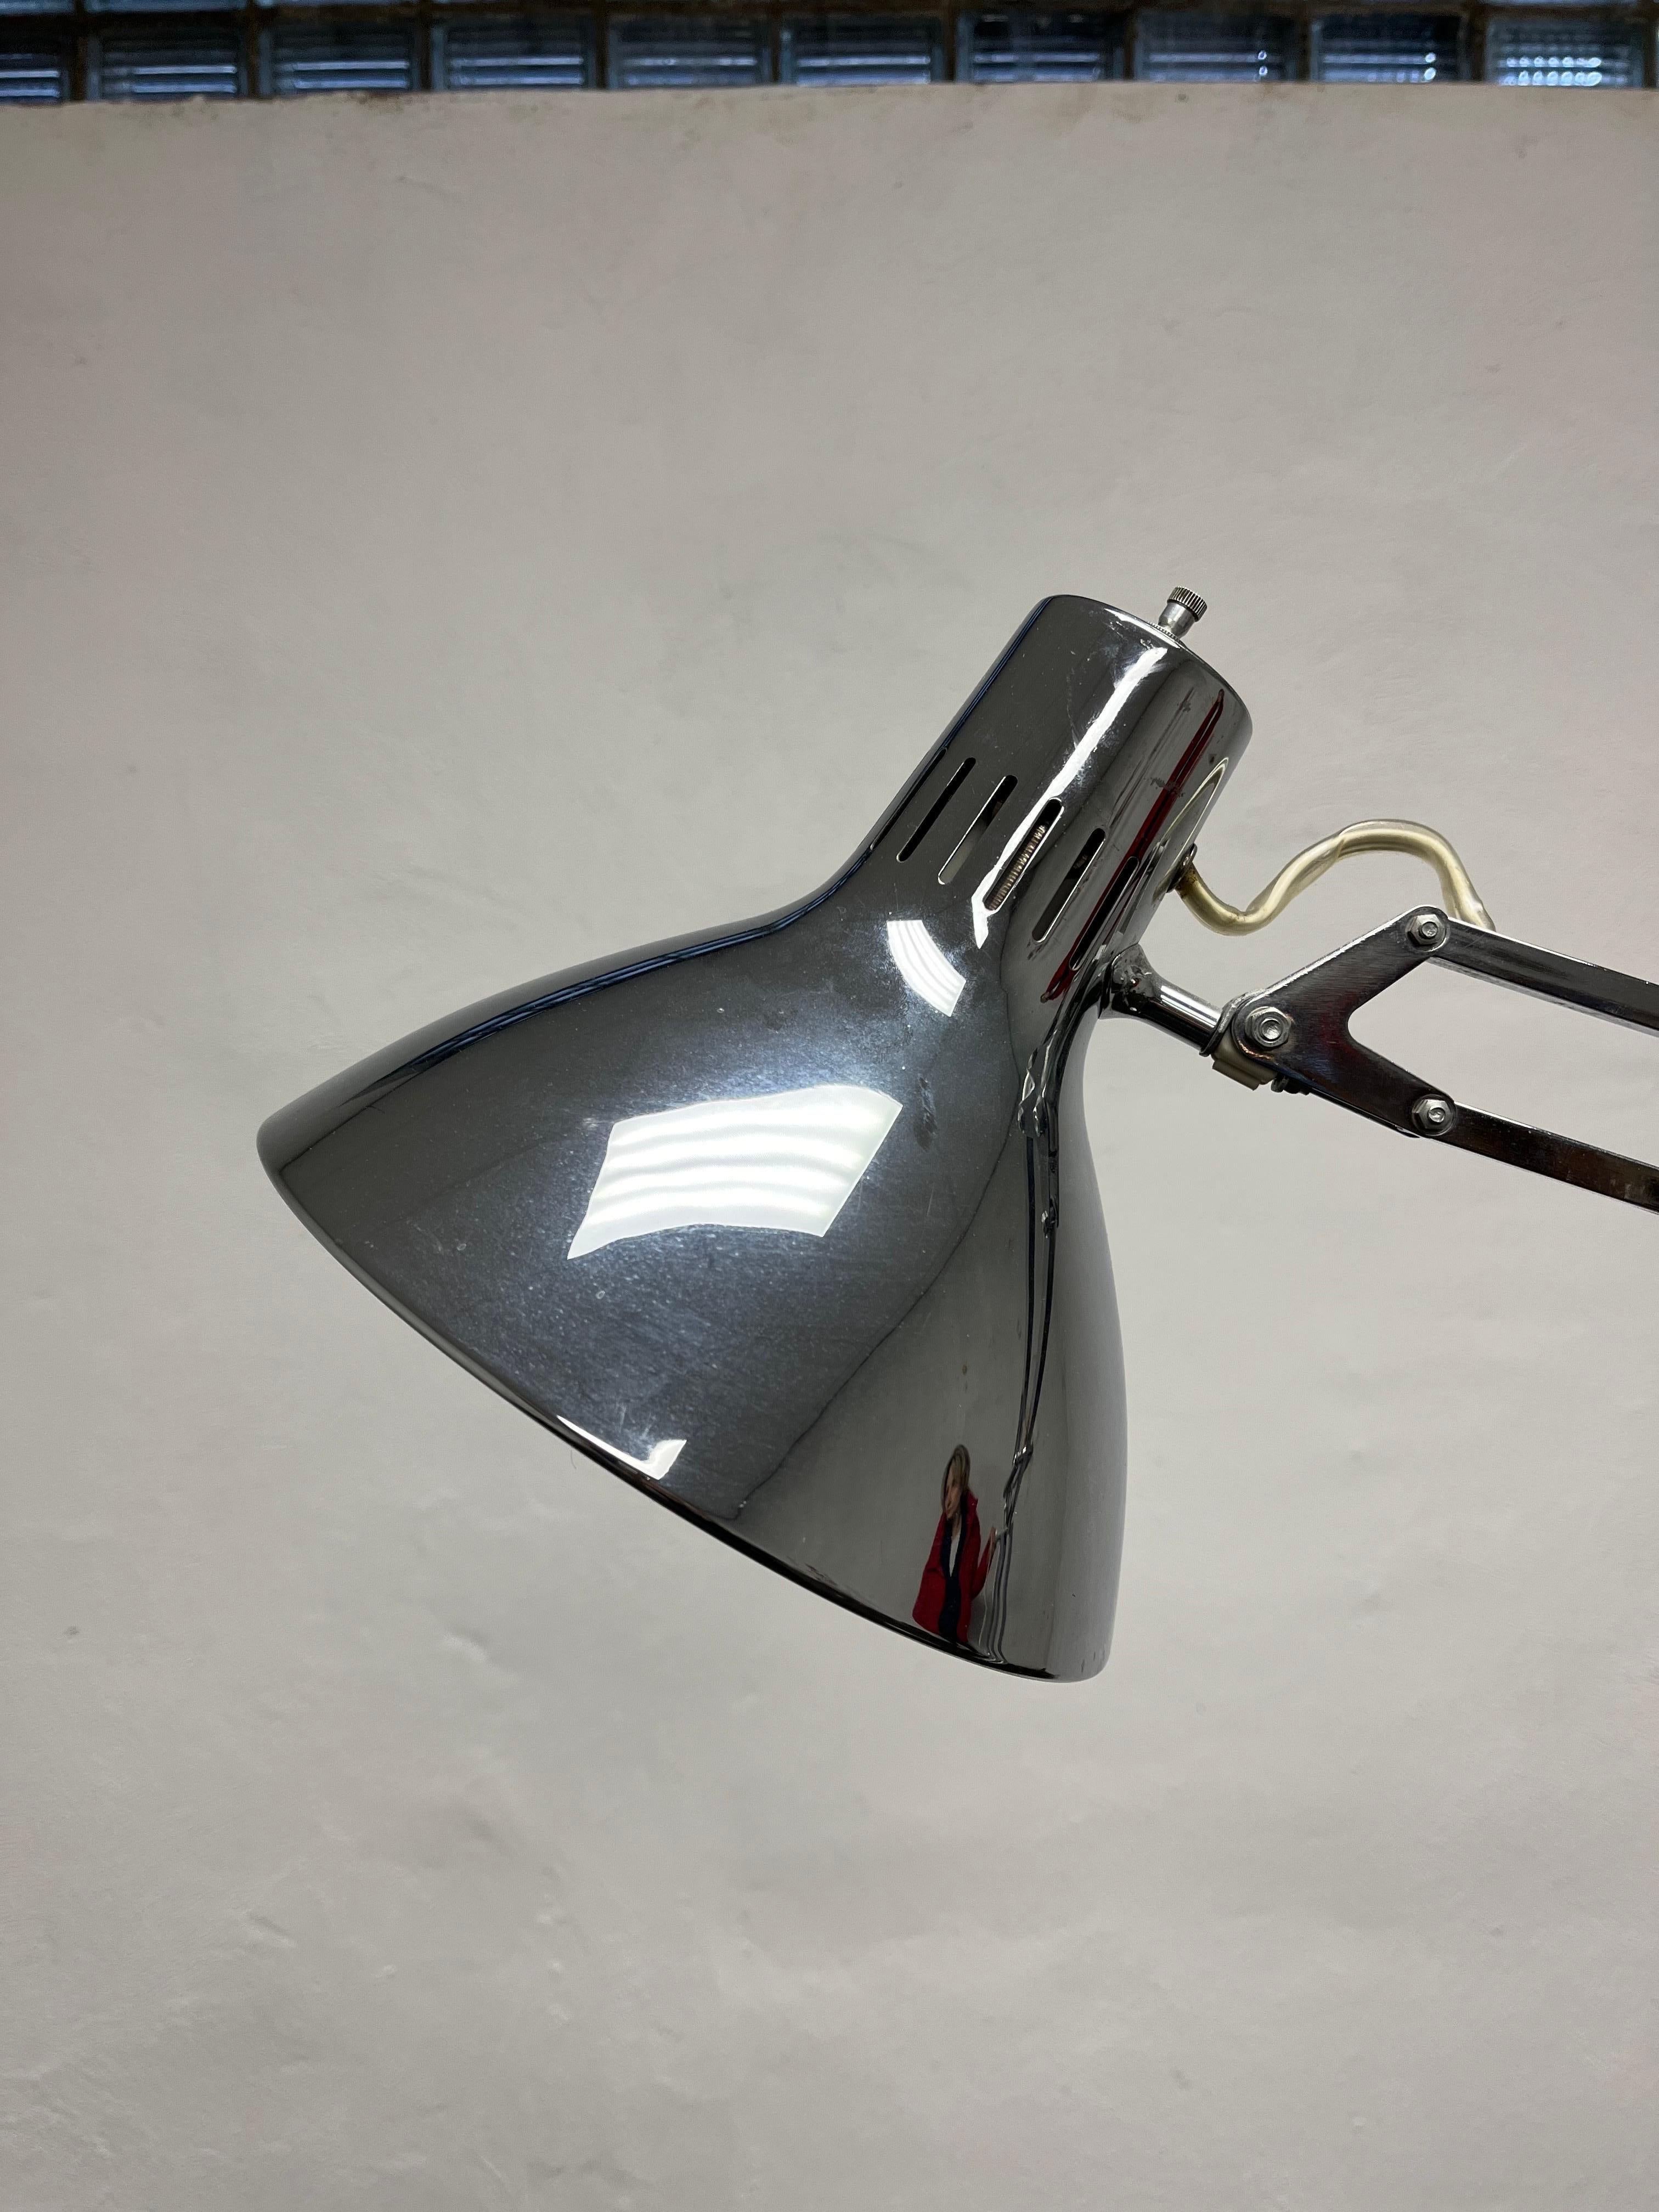 Dies ist eine schöne verchromte Stehlampe, entworfen von Jac Jacobsen um 1960. Die Leuchte verfügt über ausgezeichnete helle Oberflächen und eine perfekte Einstellfunktion. Schöner kontrastierender Sockel aus Aluminium.
Bordsteinkante nach